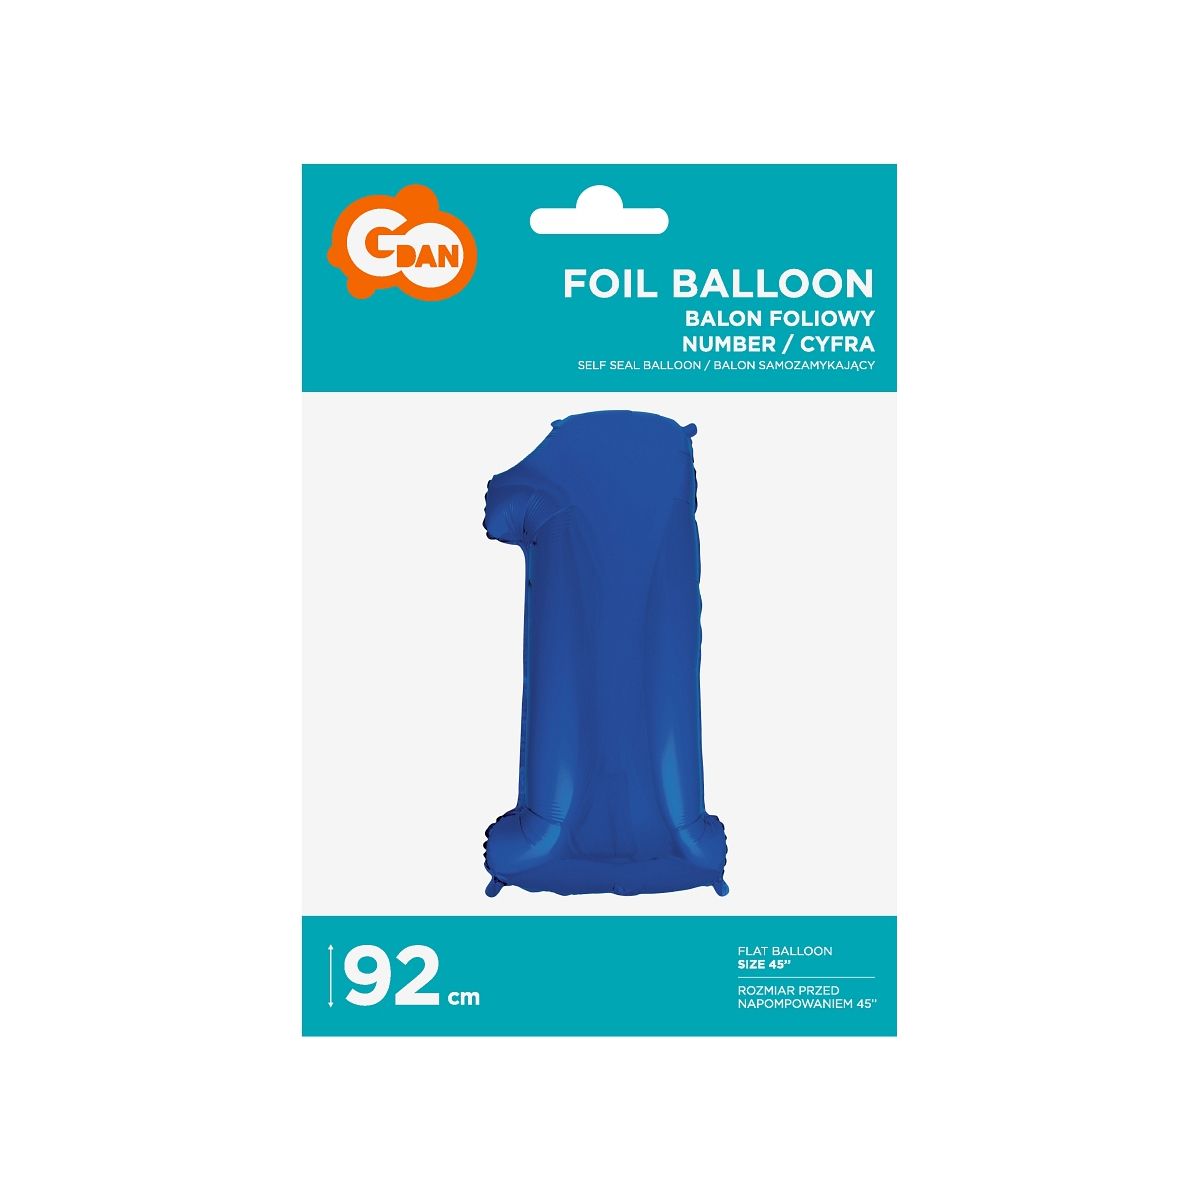 Balon foliowy Godan balon foliowy niebieski cyfra 1 35cal (FG-C85n1)